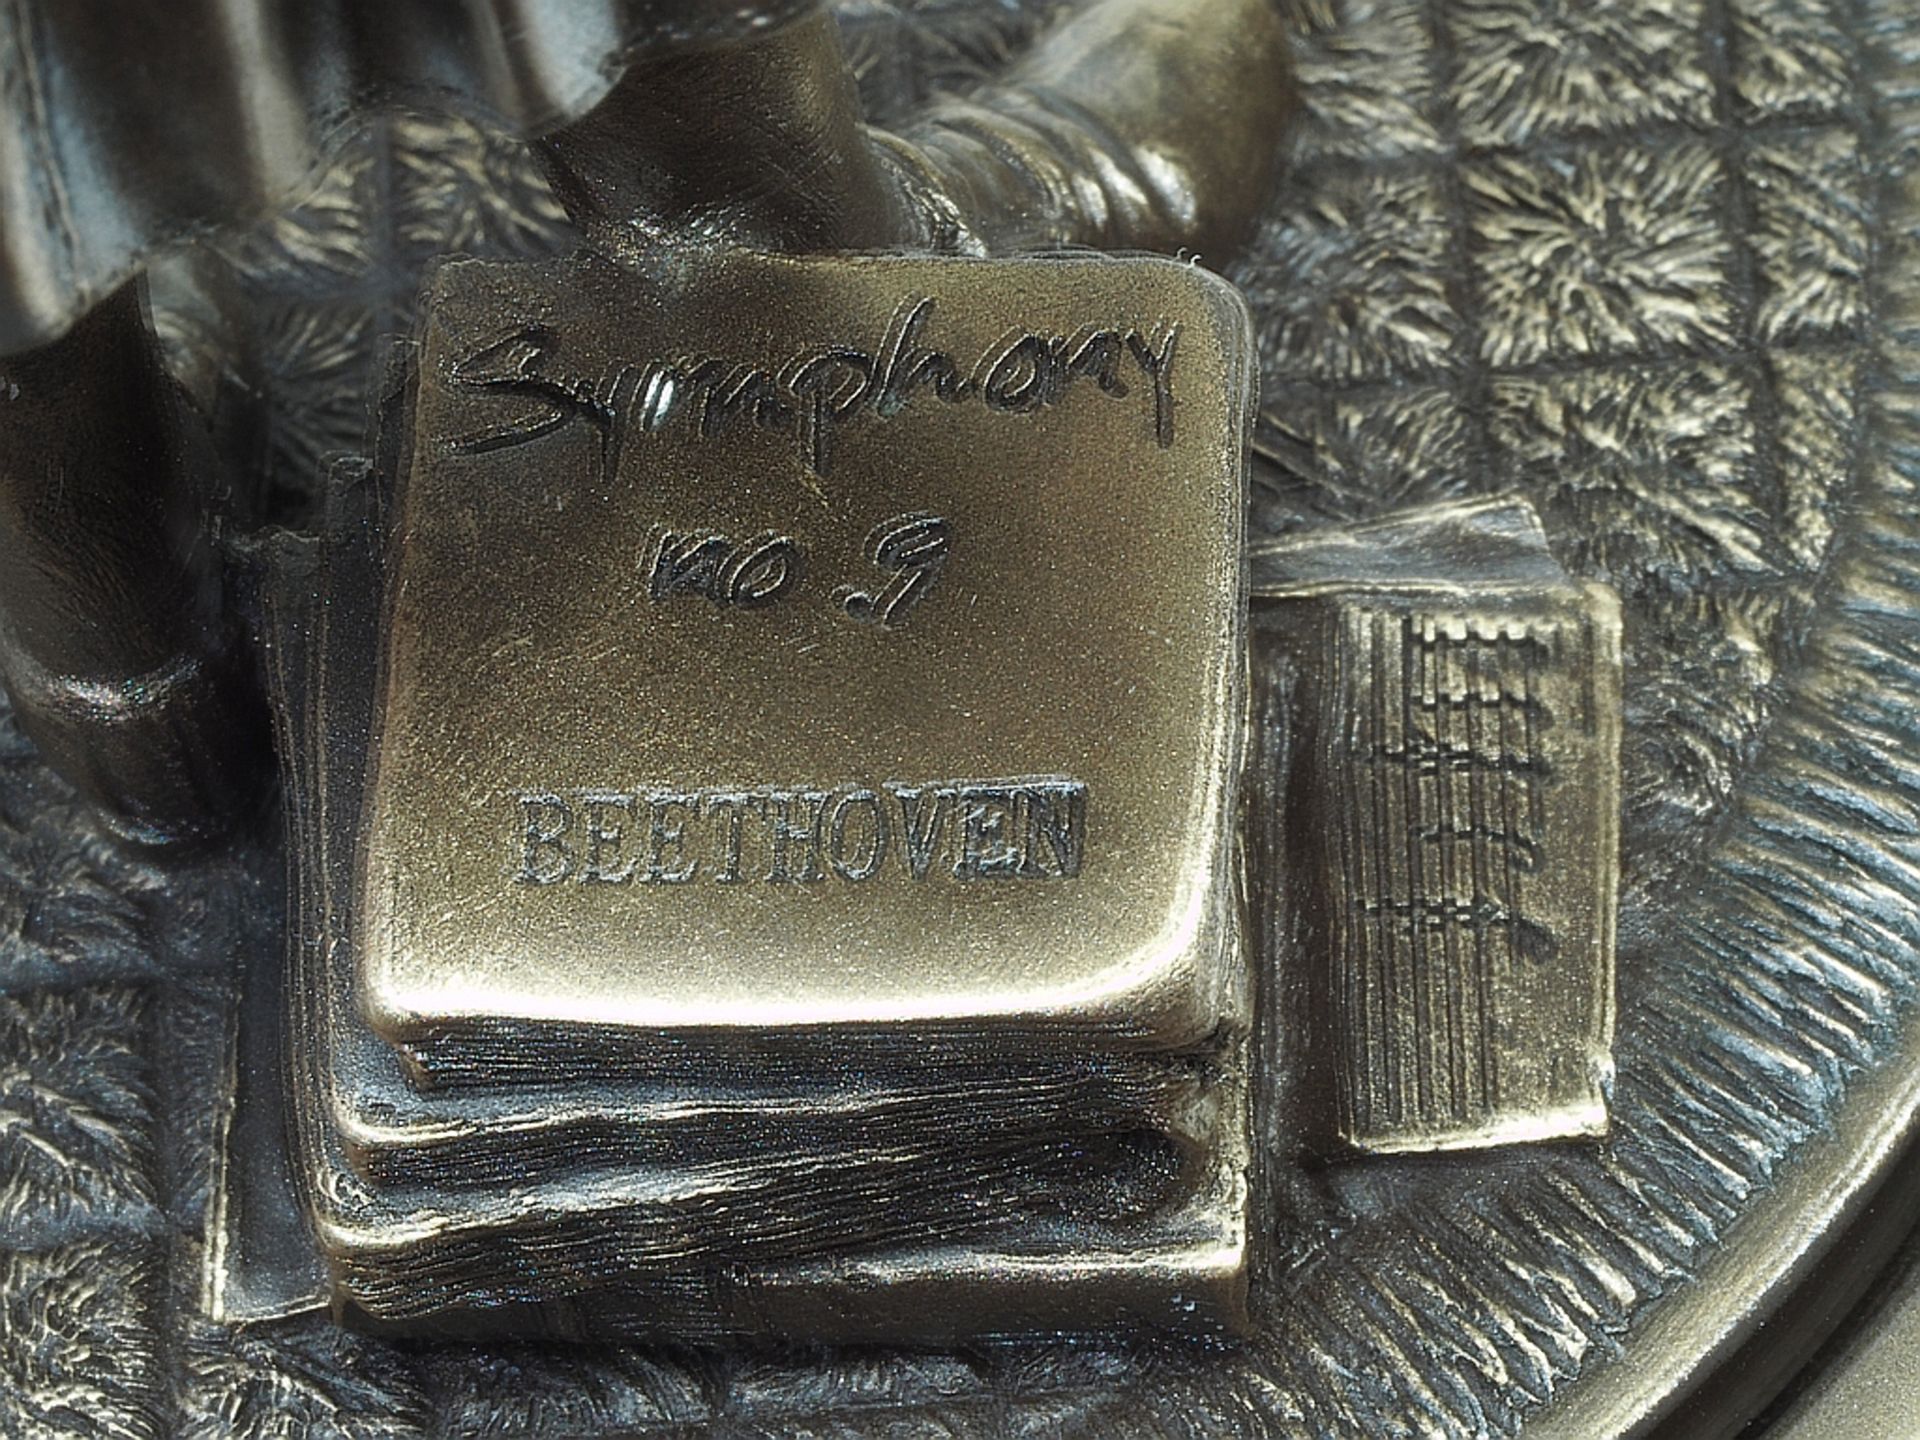 Figürliche Spieluhr "Ludwig van Beethoven", bezeichnet Symhony No. 9. - Image 8 of 8